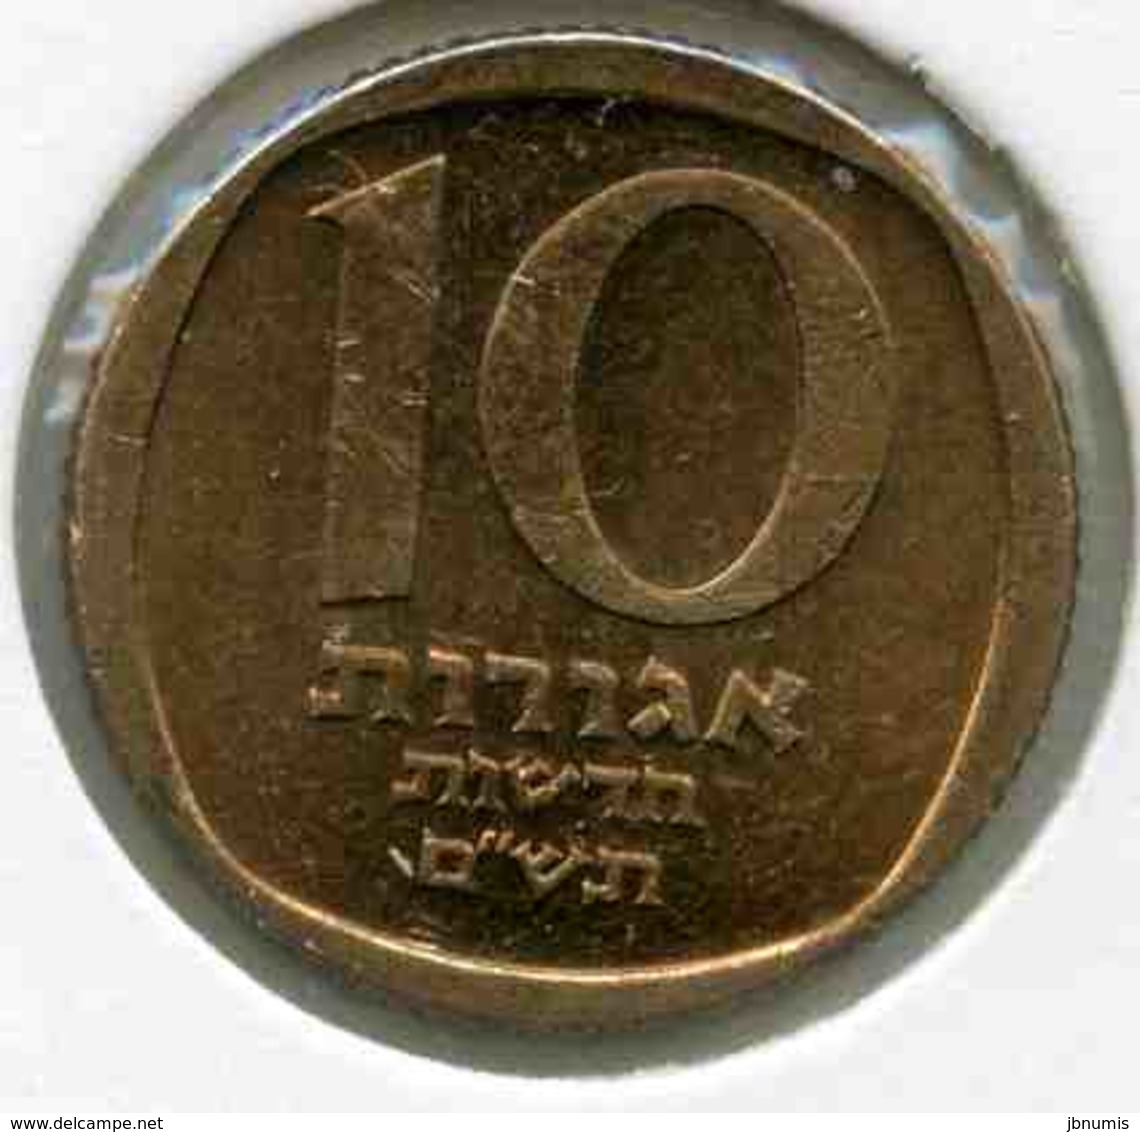 Israel 10 New Agorot 5740 1980 KM 108 - Israël